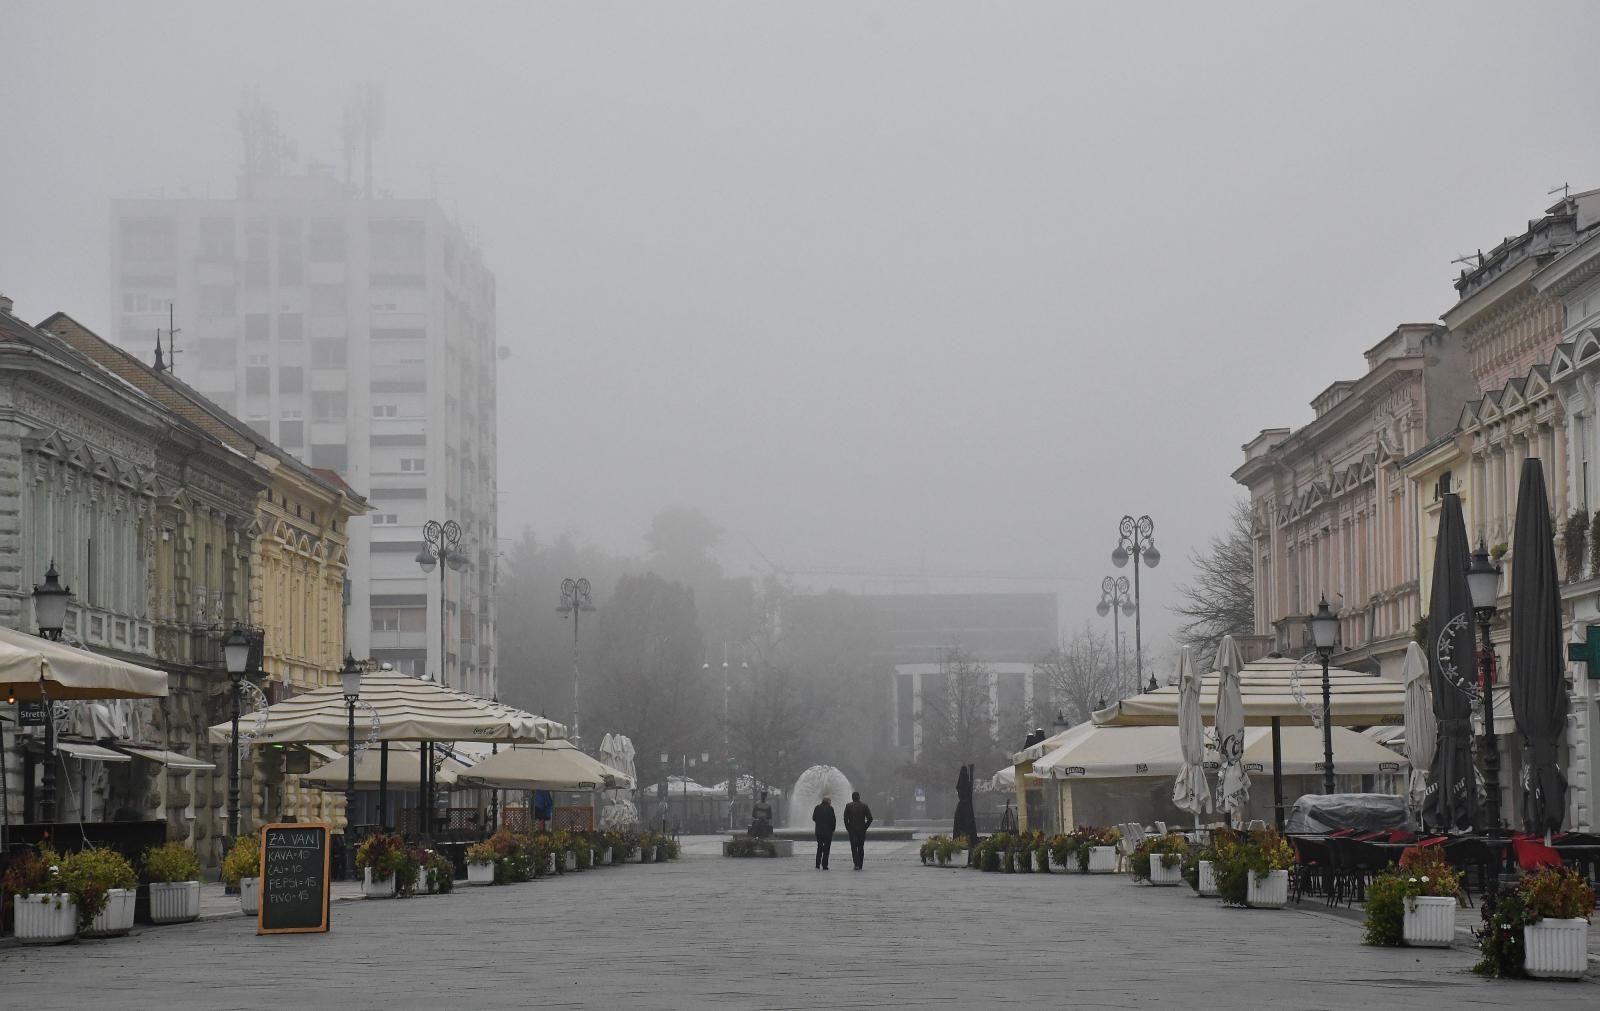 08.11.2020., Slavonski Brod - Tek rijetki prolaznici na ulicama u gustoj jesenjoj magli koja prekriva grad.
Photo: Ivica Galovic/PIXSELL